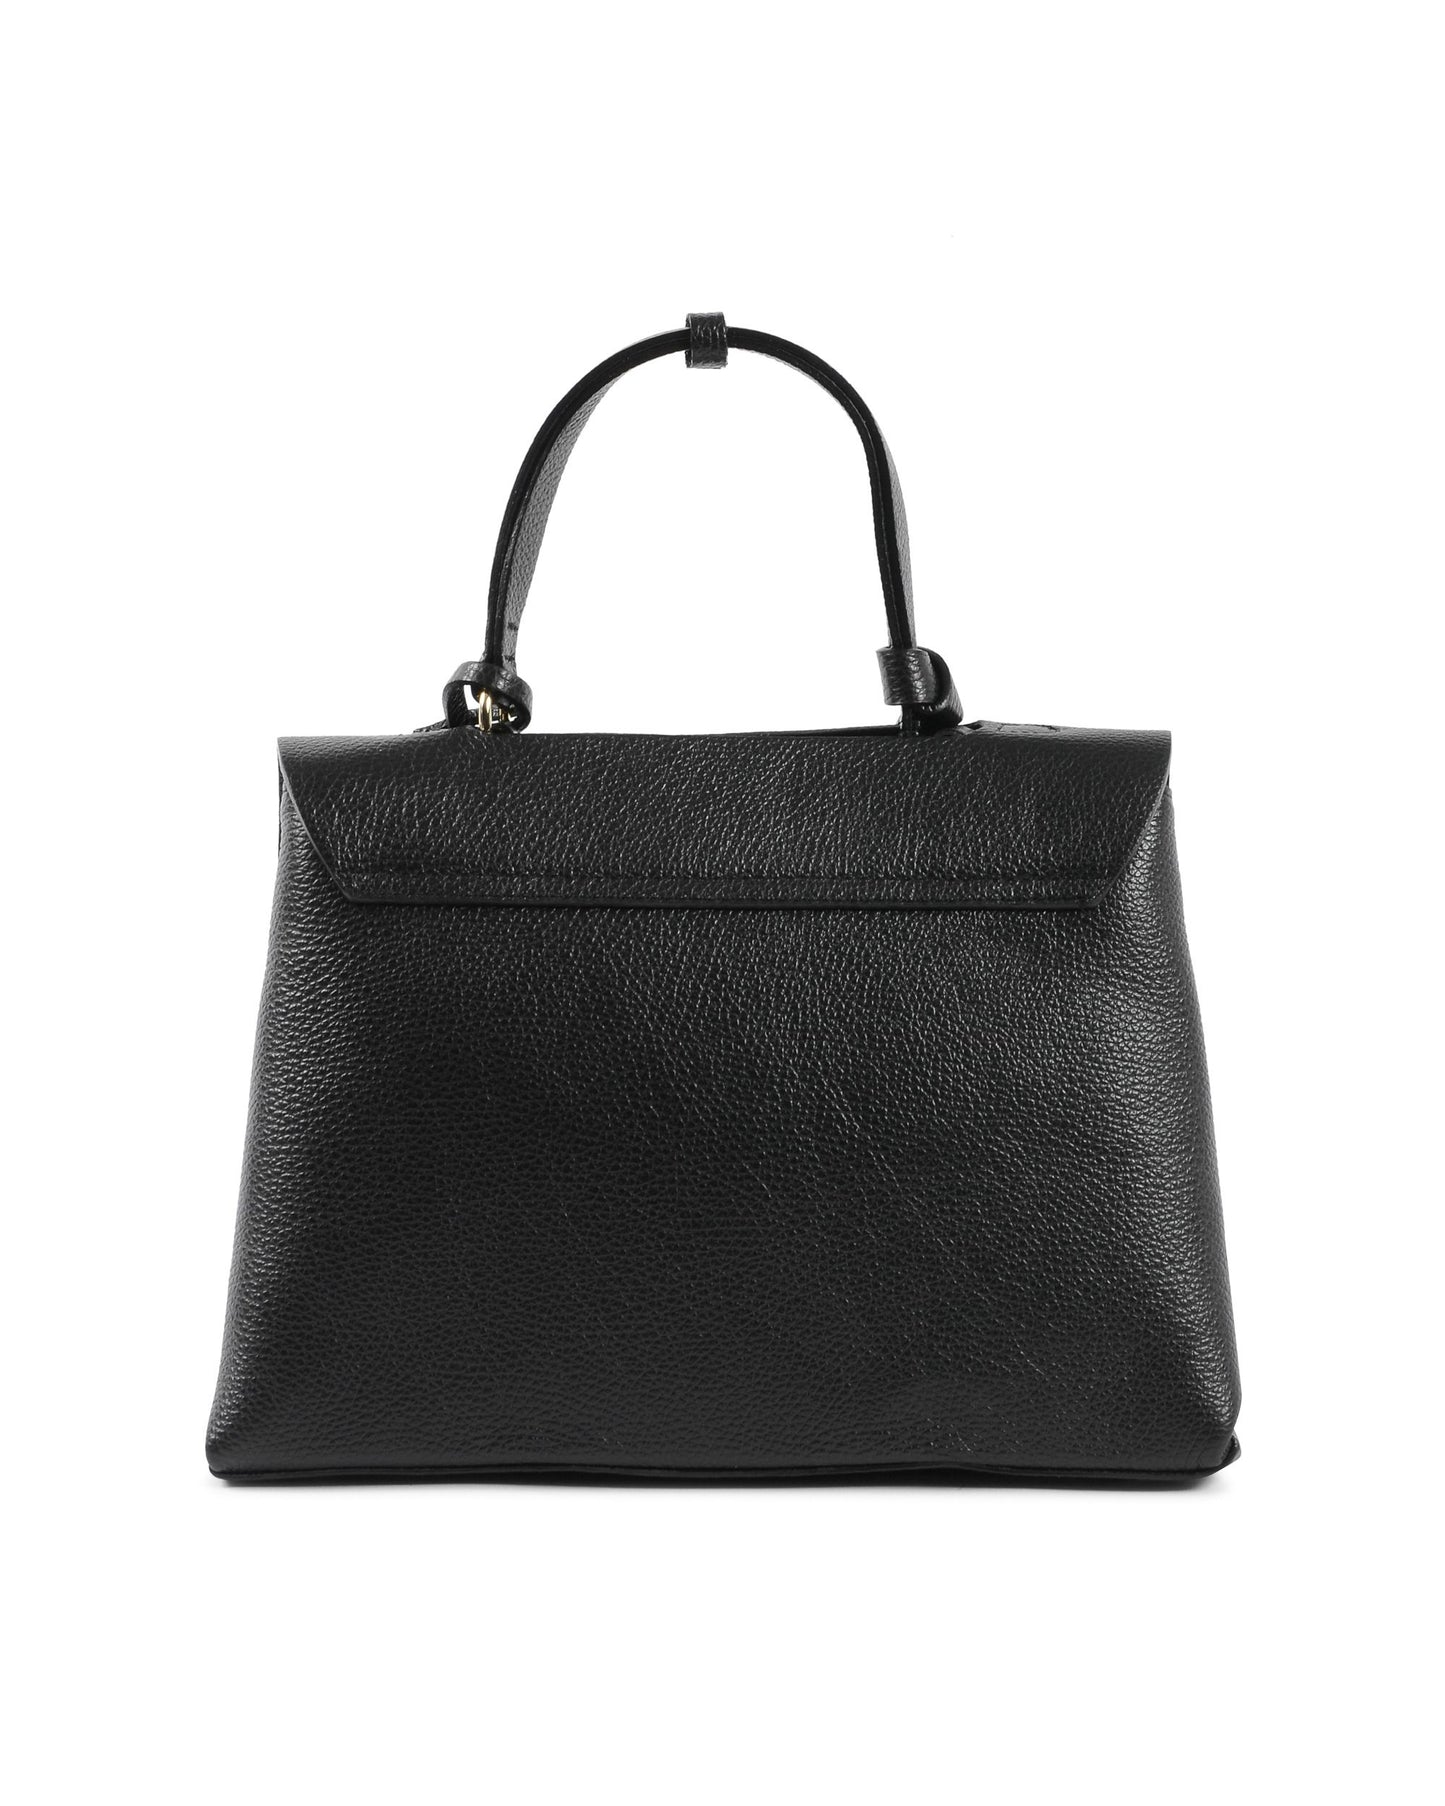 V Italia Womens Handbag Black 10520 DOLLARO NERO